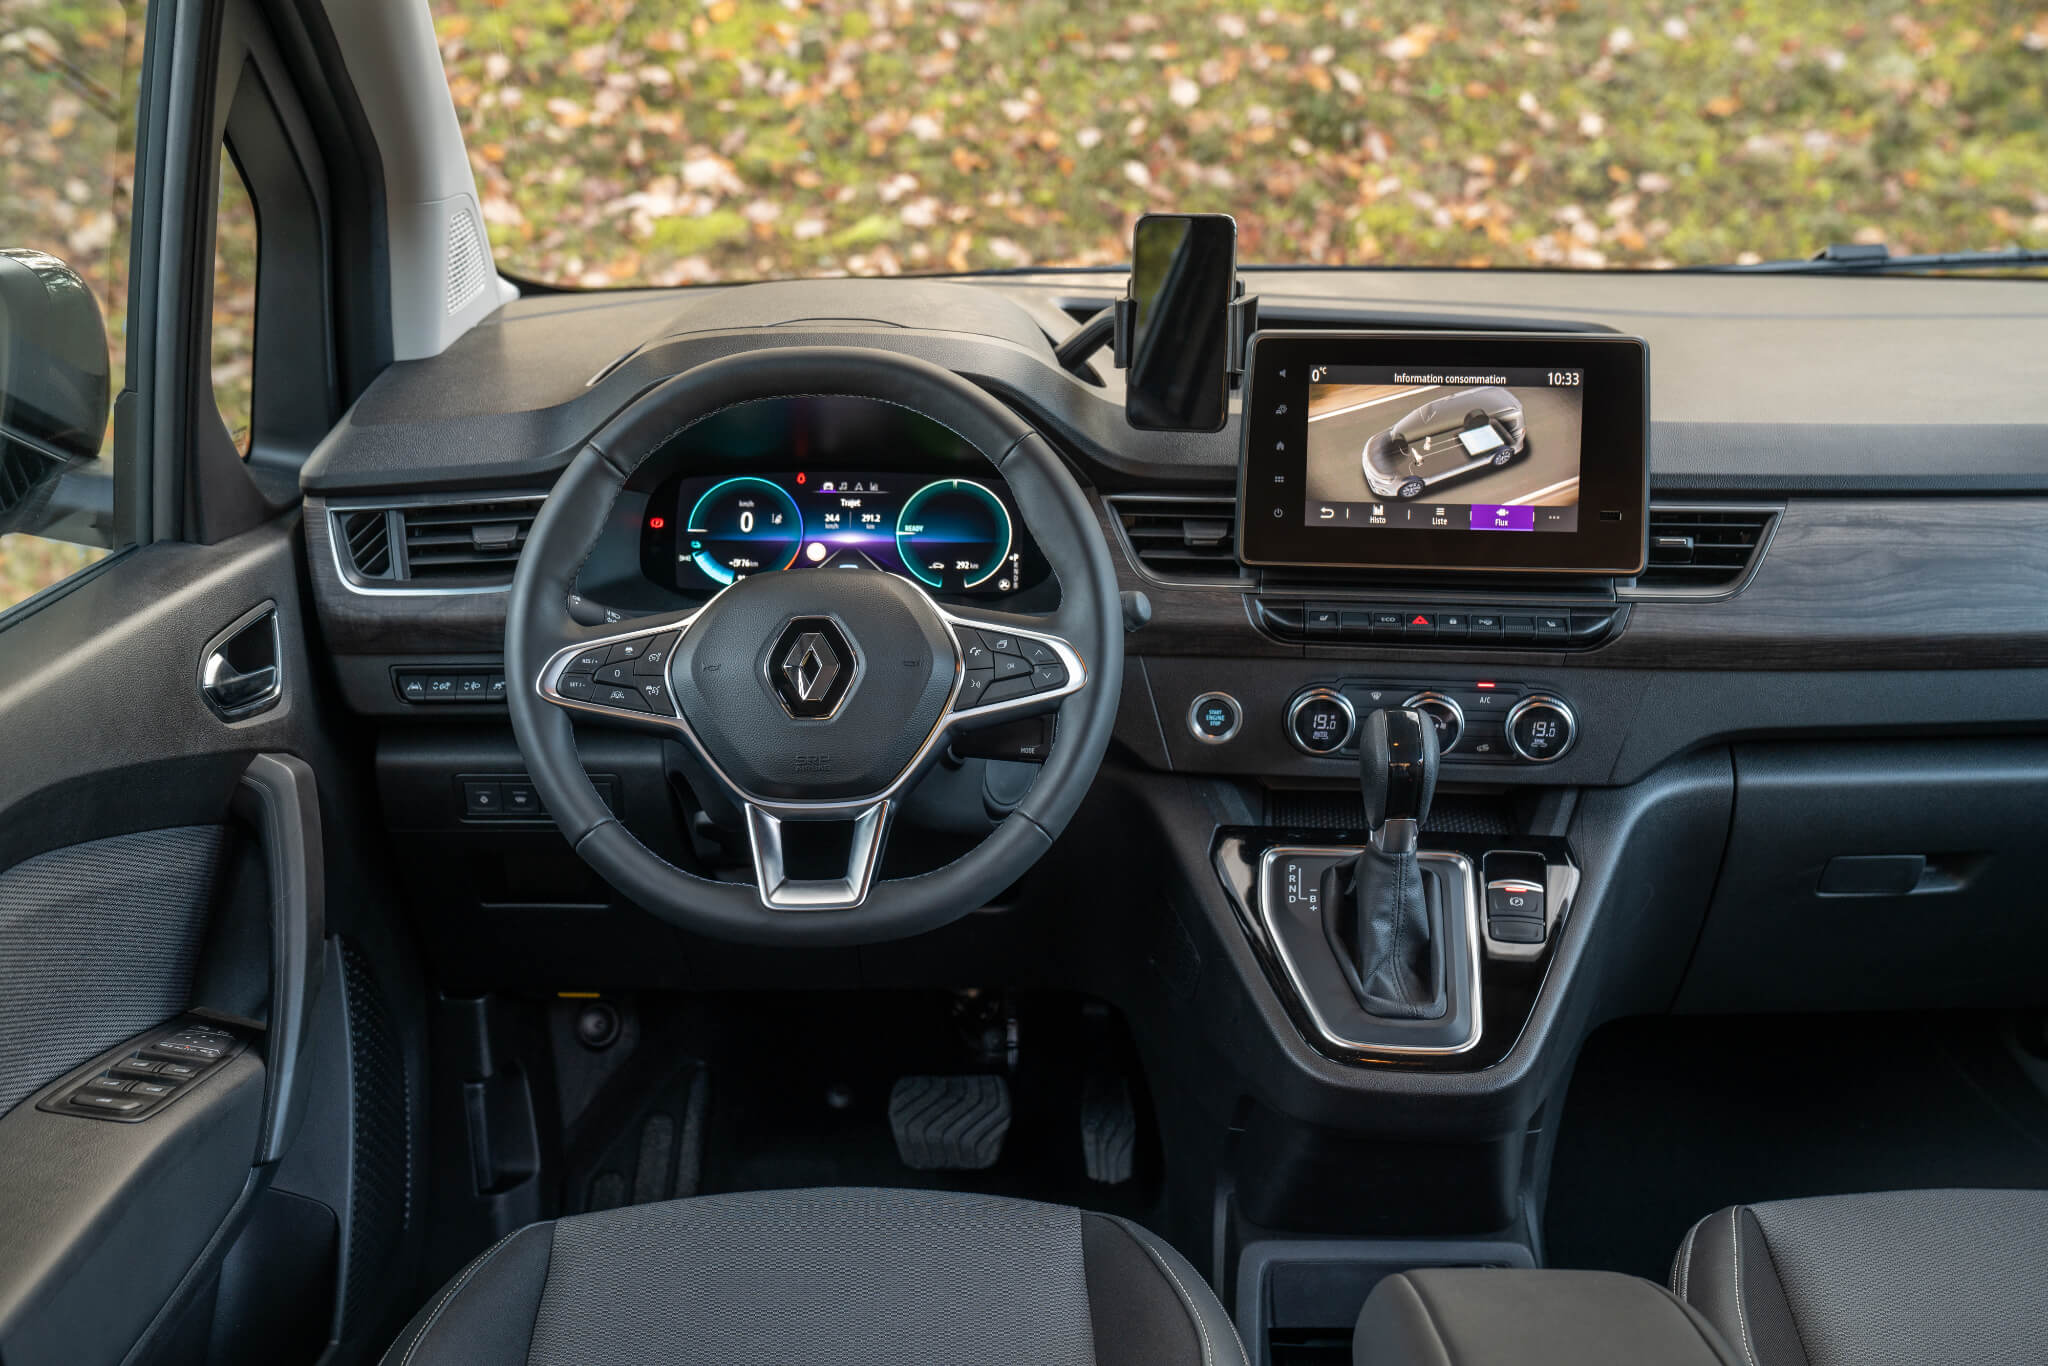 Renault Kangoo E-Tech interior